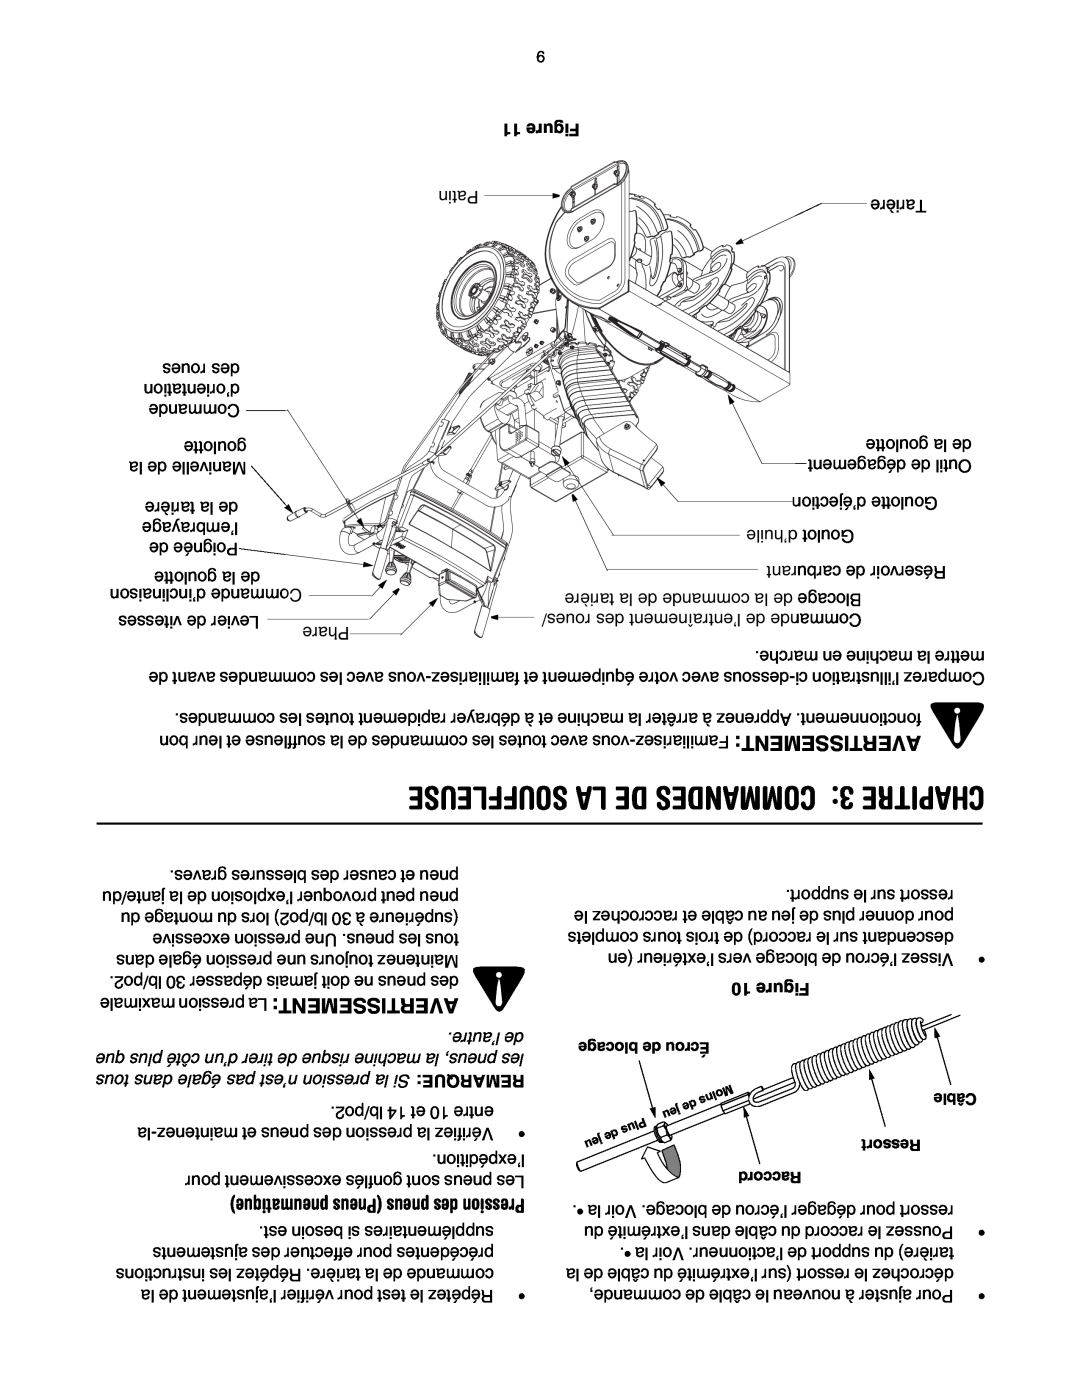 Yard-Man OGST-2806 manual SOUFFLEUSE LA DE COMMANDES 3 CHAPITRE, Figure 